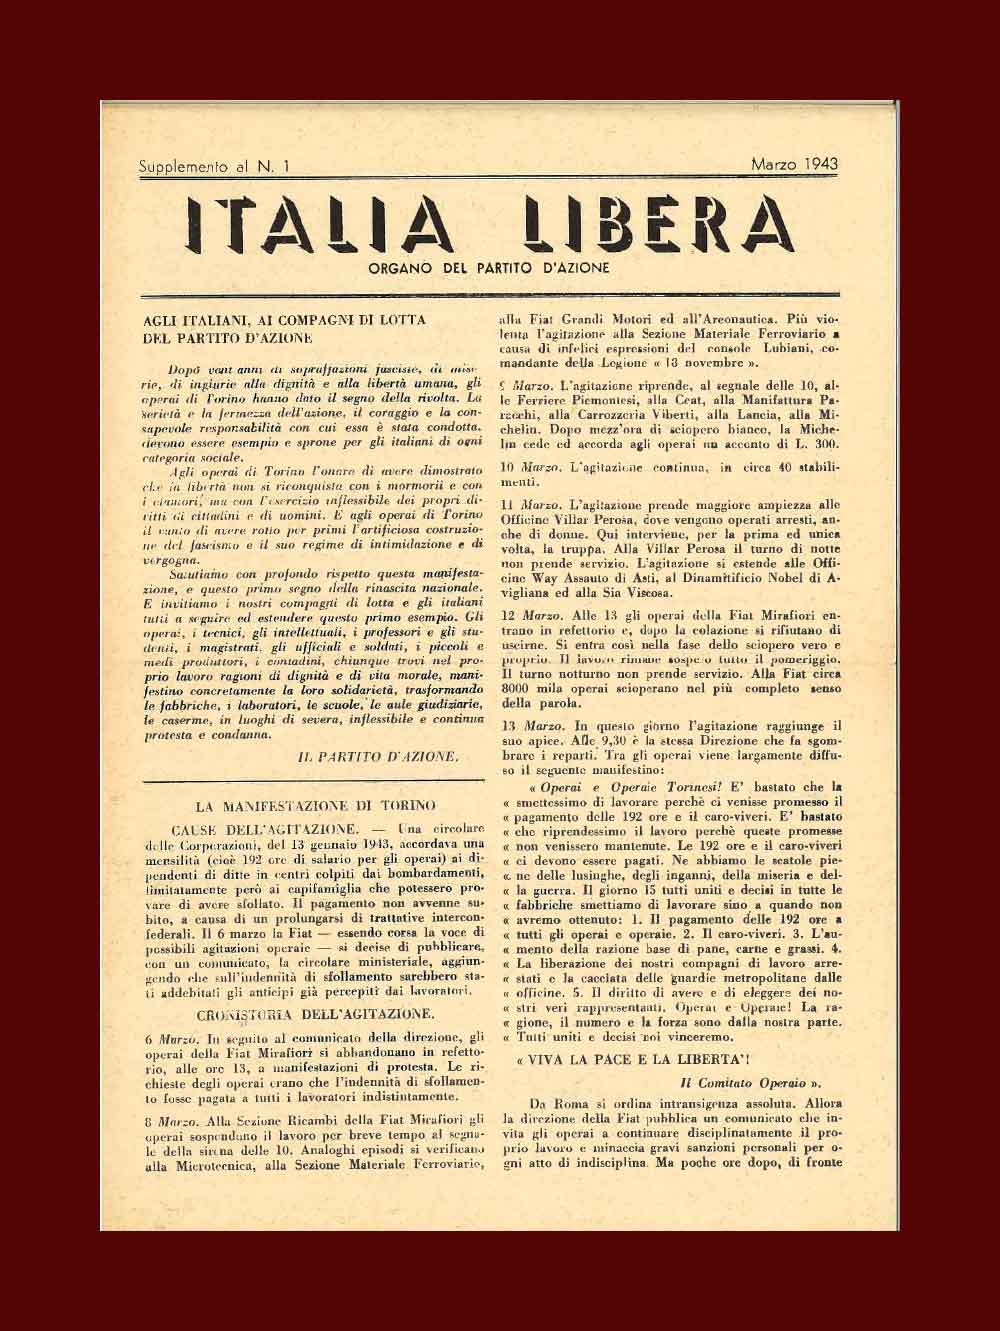 Supplemento n.1 del giornale clandestino del Partito d’Azione, «Italia libera», del marzo 1943